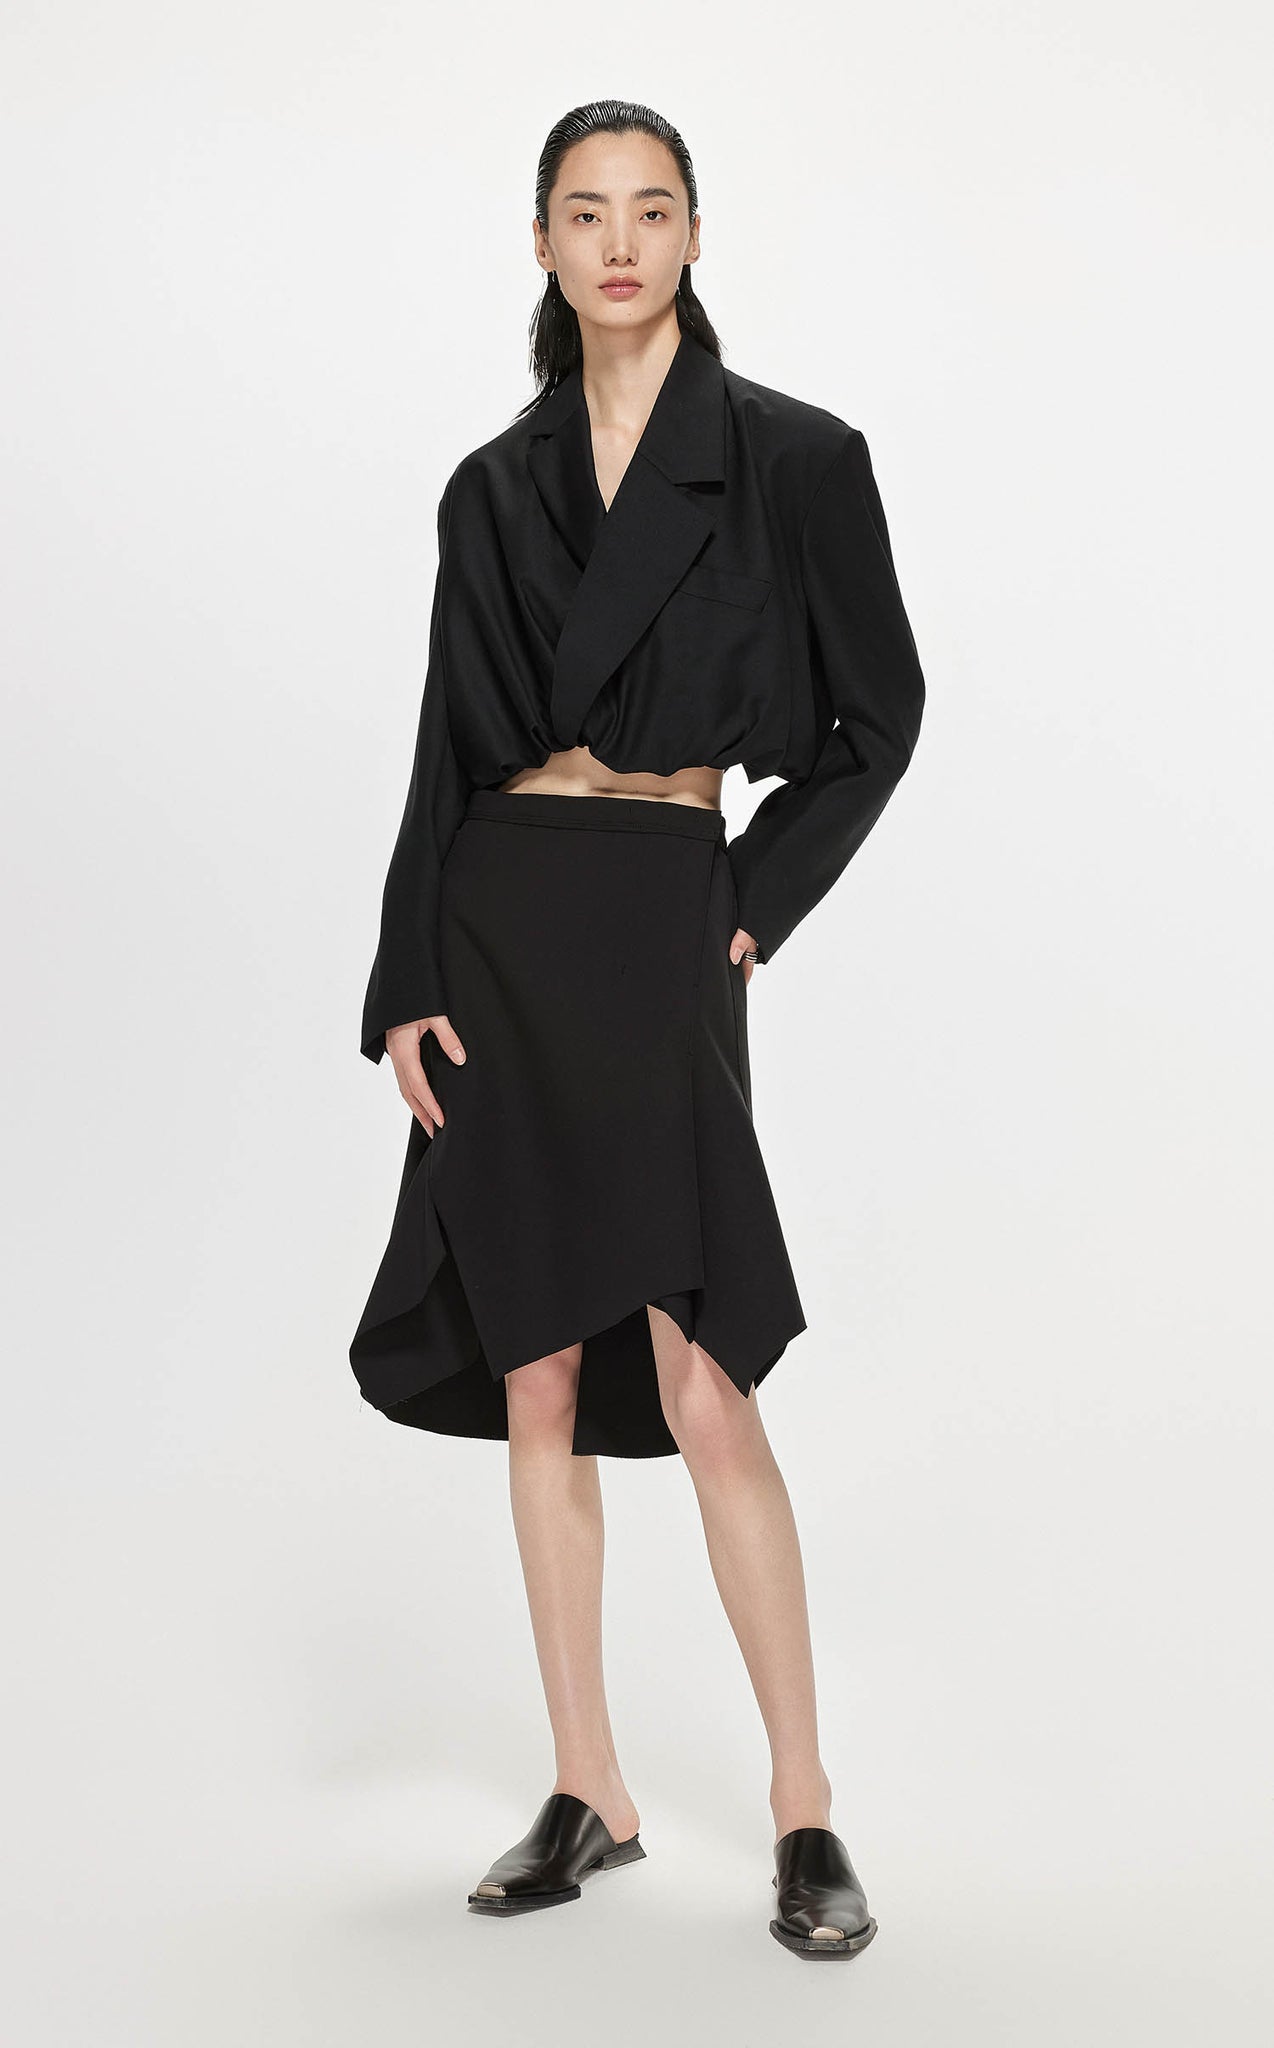 Skirt / JNBY Asymmetric Hem Short Skirt